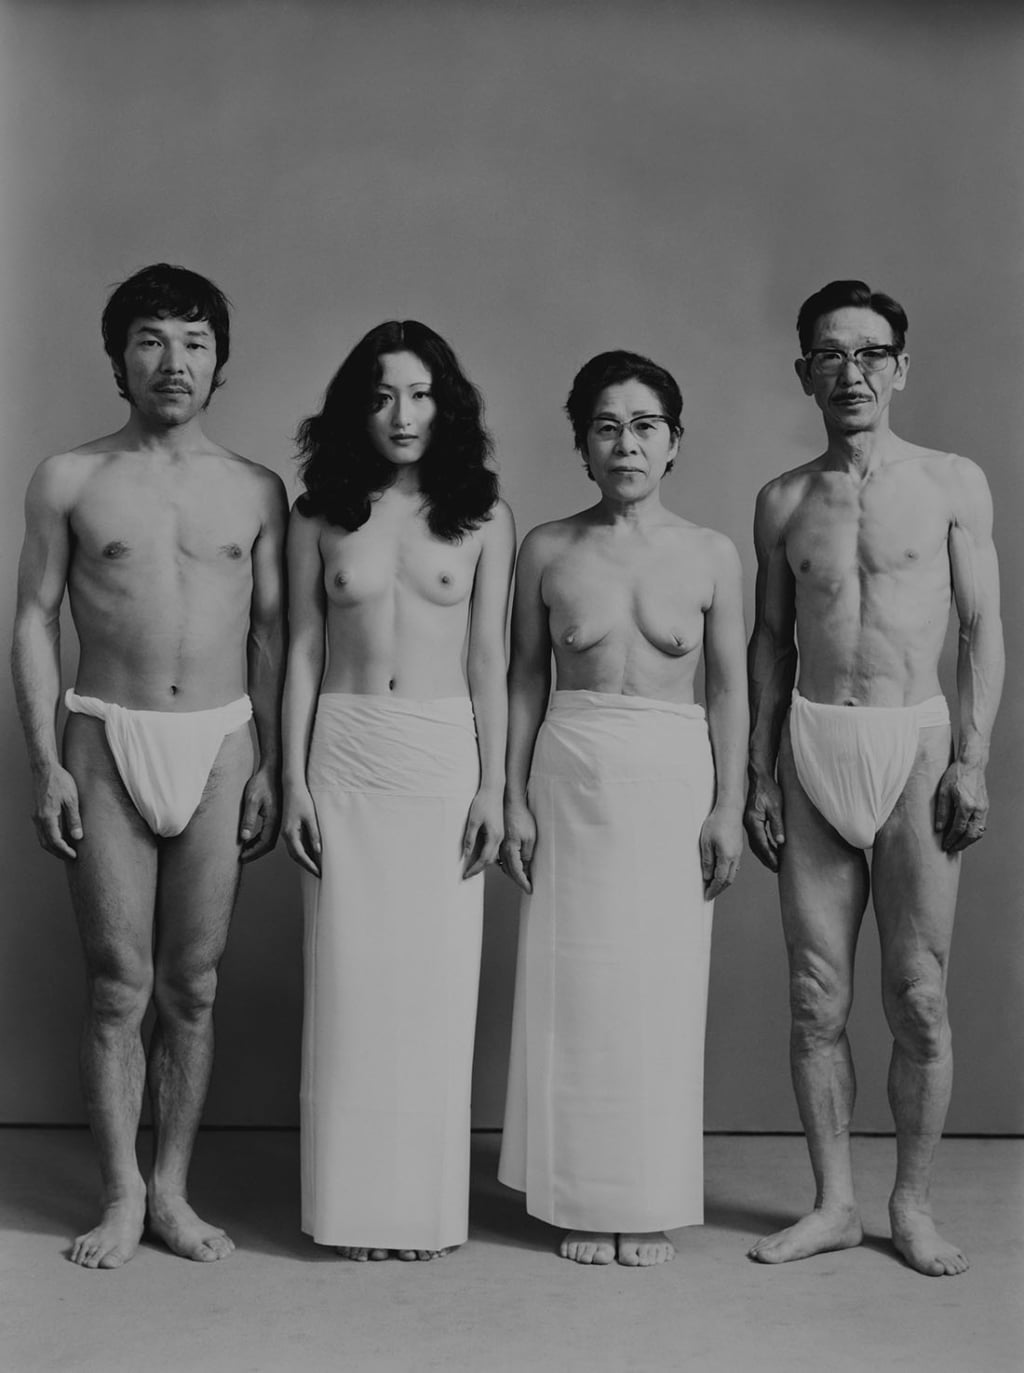 Family nudity pics